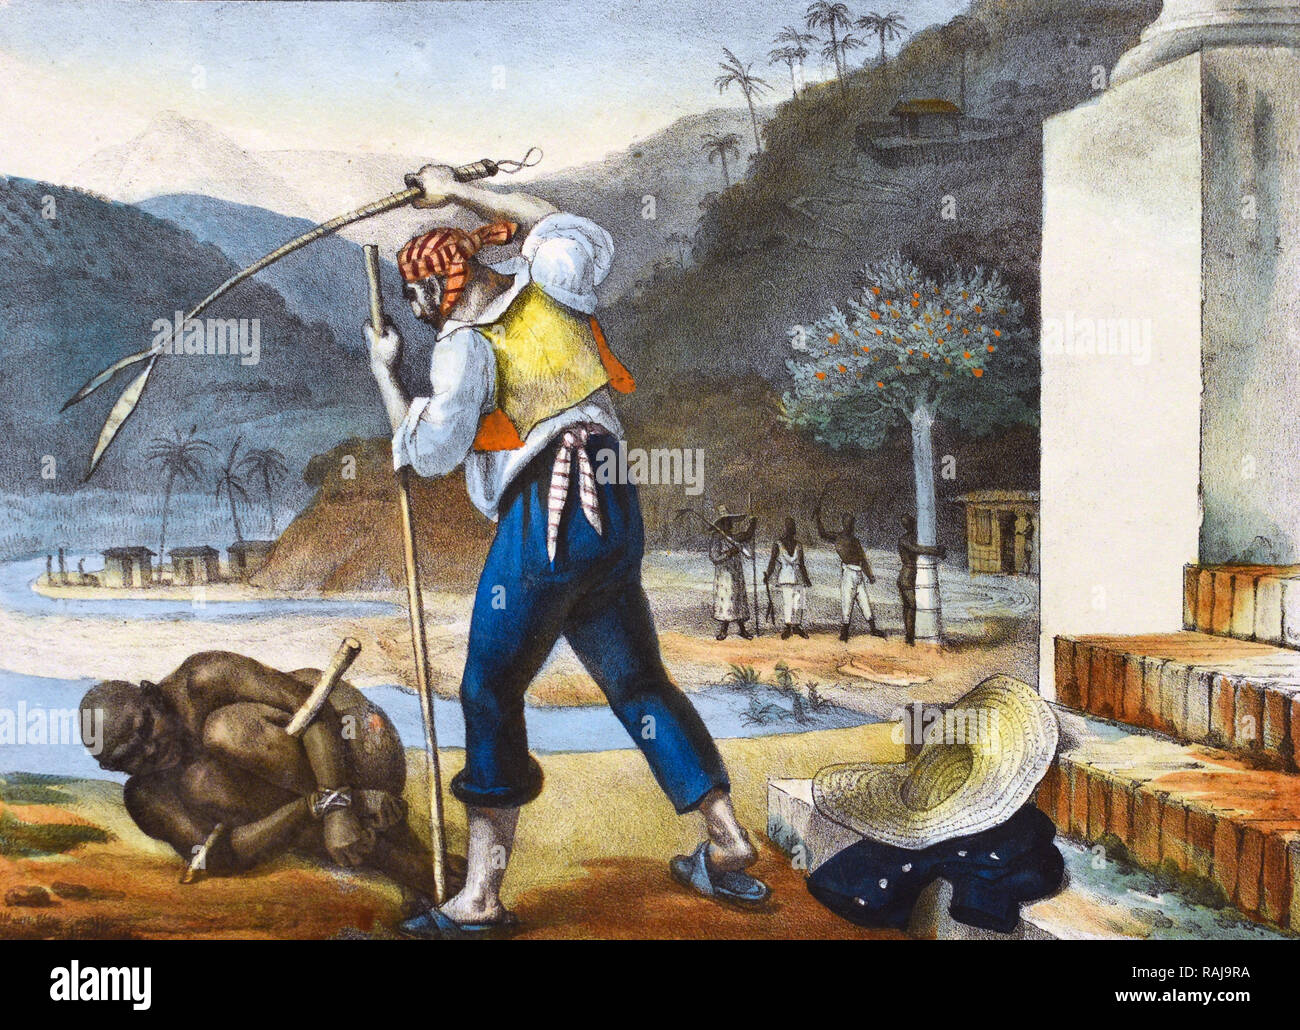 JEAN - BAPTISTE DEBRET (1768-1848) französischer Künstler. Eine Lithographie mit dem Titel "Plantation Aufseher der Disziplinierung der Schwarzen" aus seiner Geschichte von Brasilien zwischen 1834 und 1839 veröffentlicht. Stockfoto